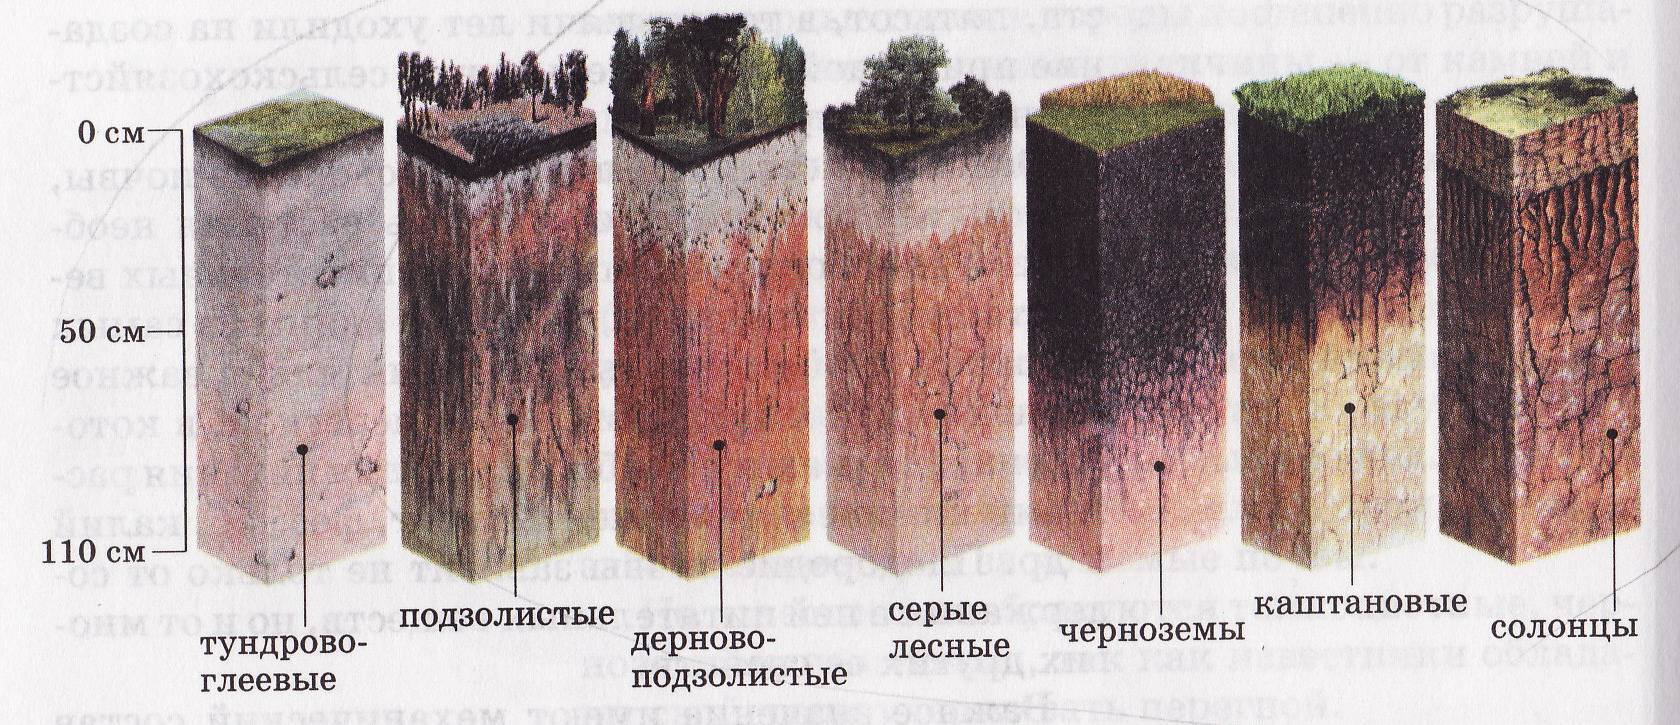 Мощность горизонта дерново подзолистых почв. Дерново-подзолистая, серая Лесная, чернозем почвенные горизонты. Подзолистая почва профиль почвы. Пахотные дерново-подзолистые почвы профиль. Почвенный профиль подзолистых почв.